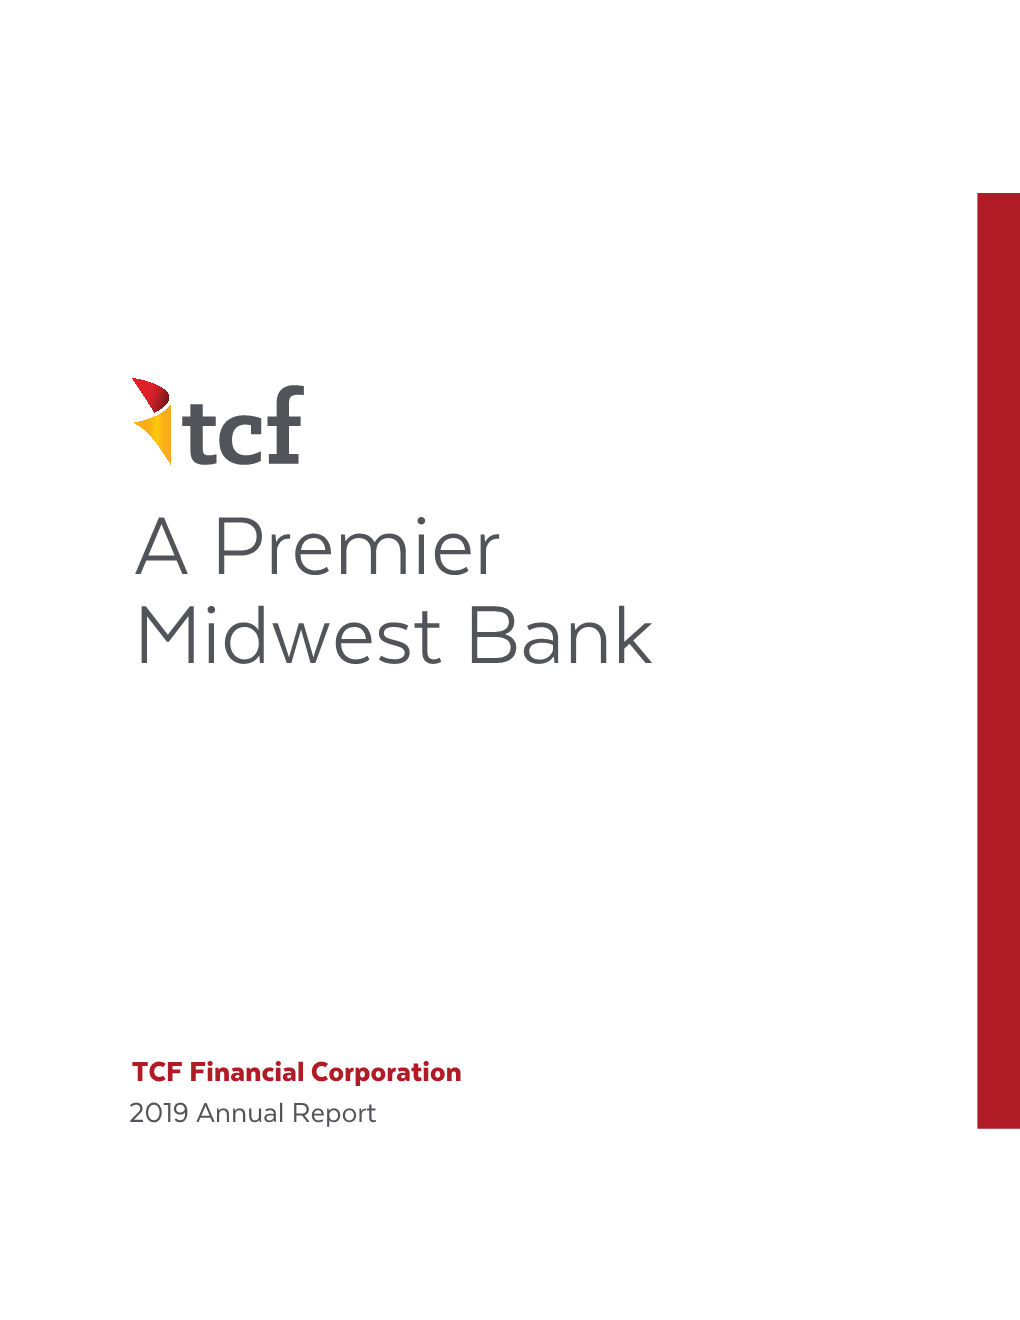 A Premier Midwest Bank